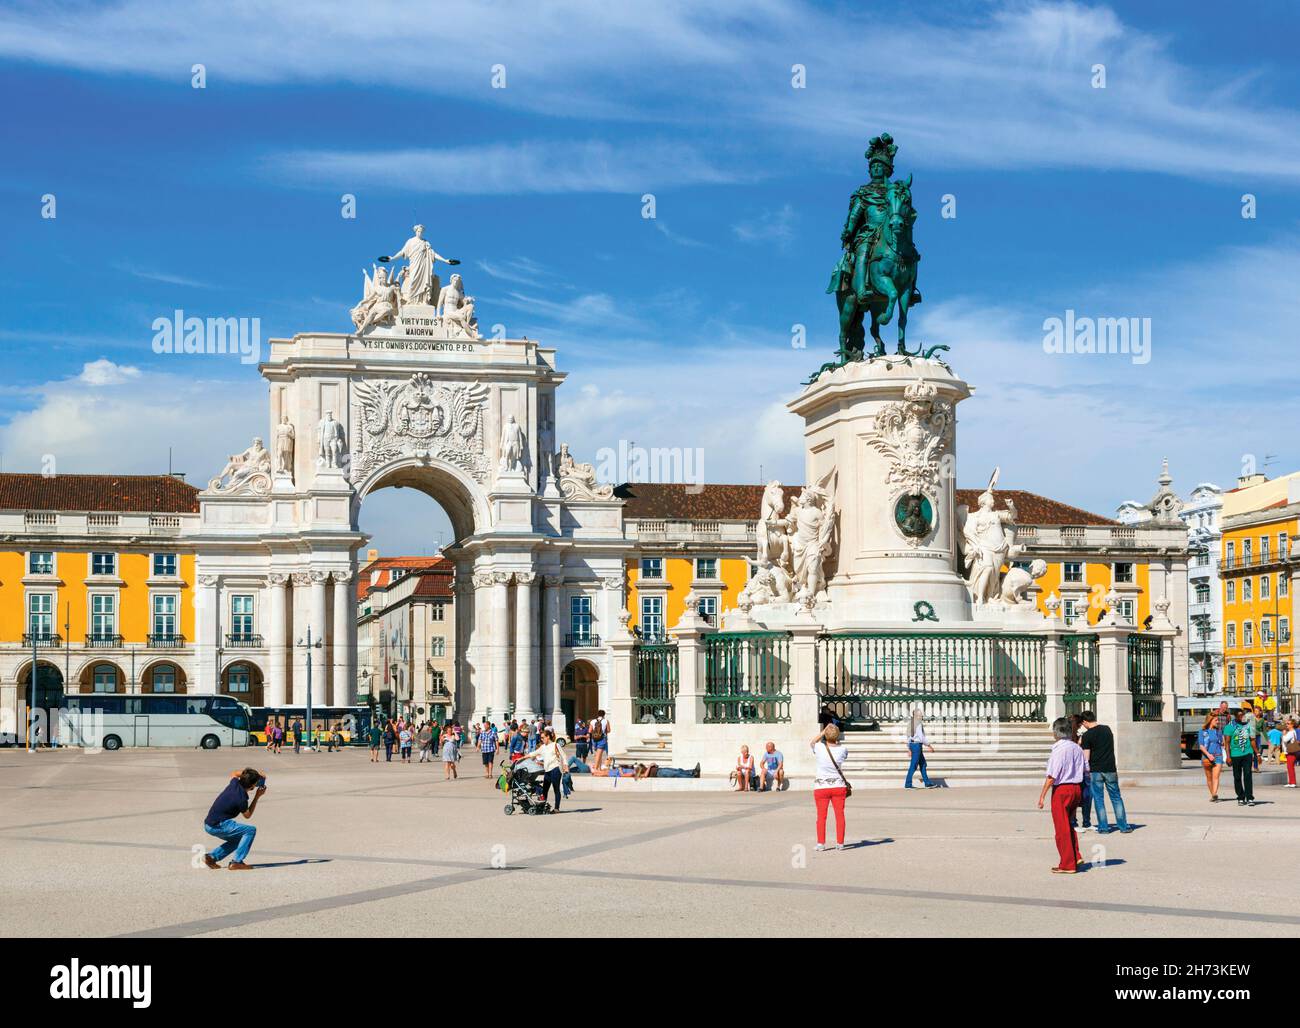 Lissabon, Portugal. Praca do Comercio oder Commerce Square. Es ist auch bekannt als Terreiro do Paco, oder Palace Square nach dem Königspalast, der stand t Stockfoto